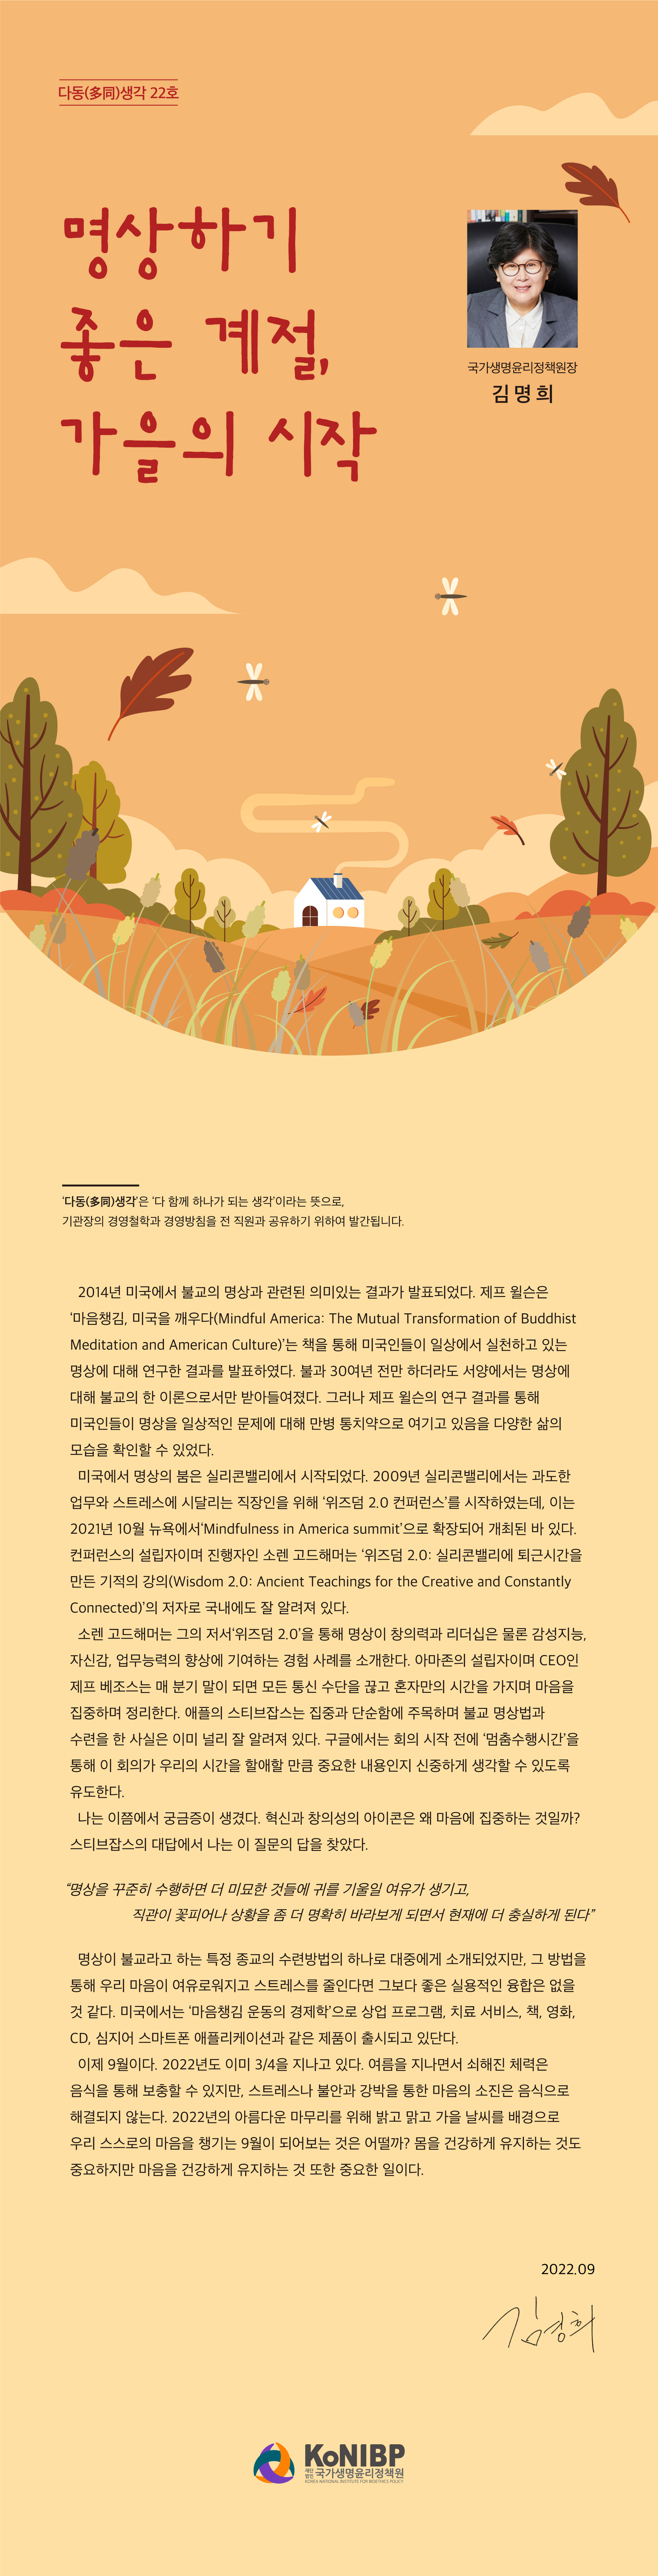 2209-국가생명윤리정책원-다동생각-22호(A).jpg